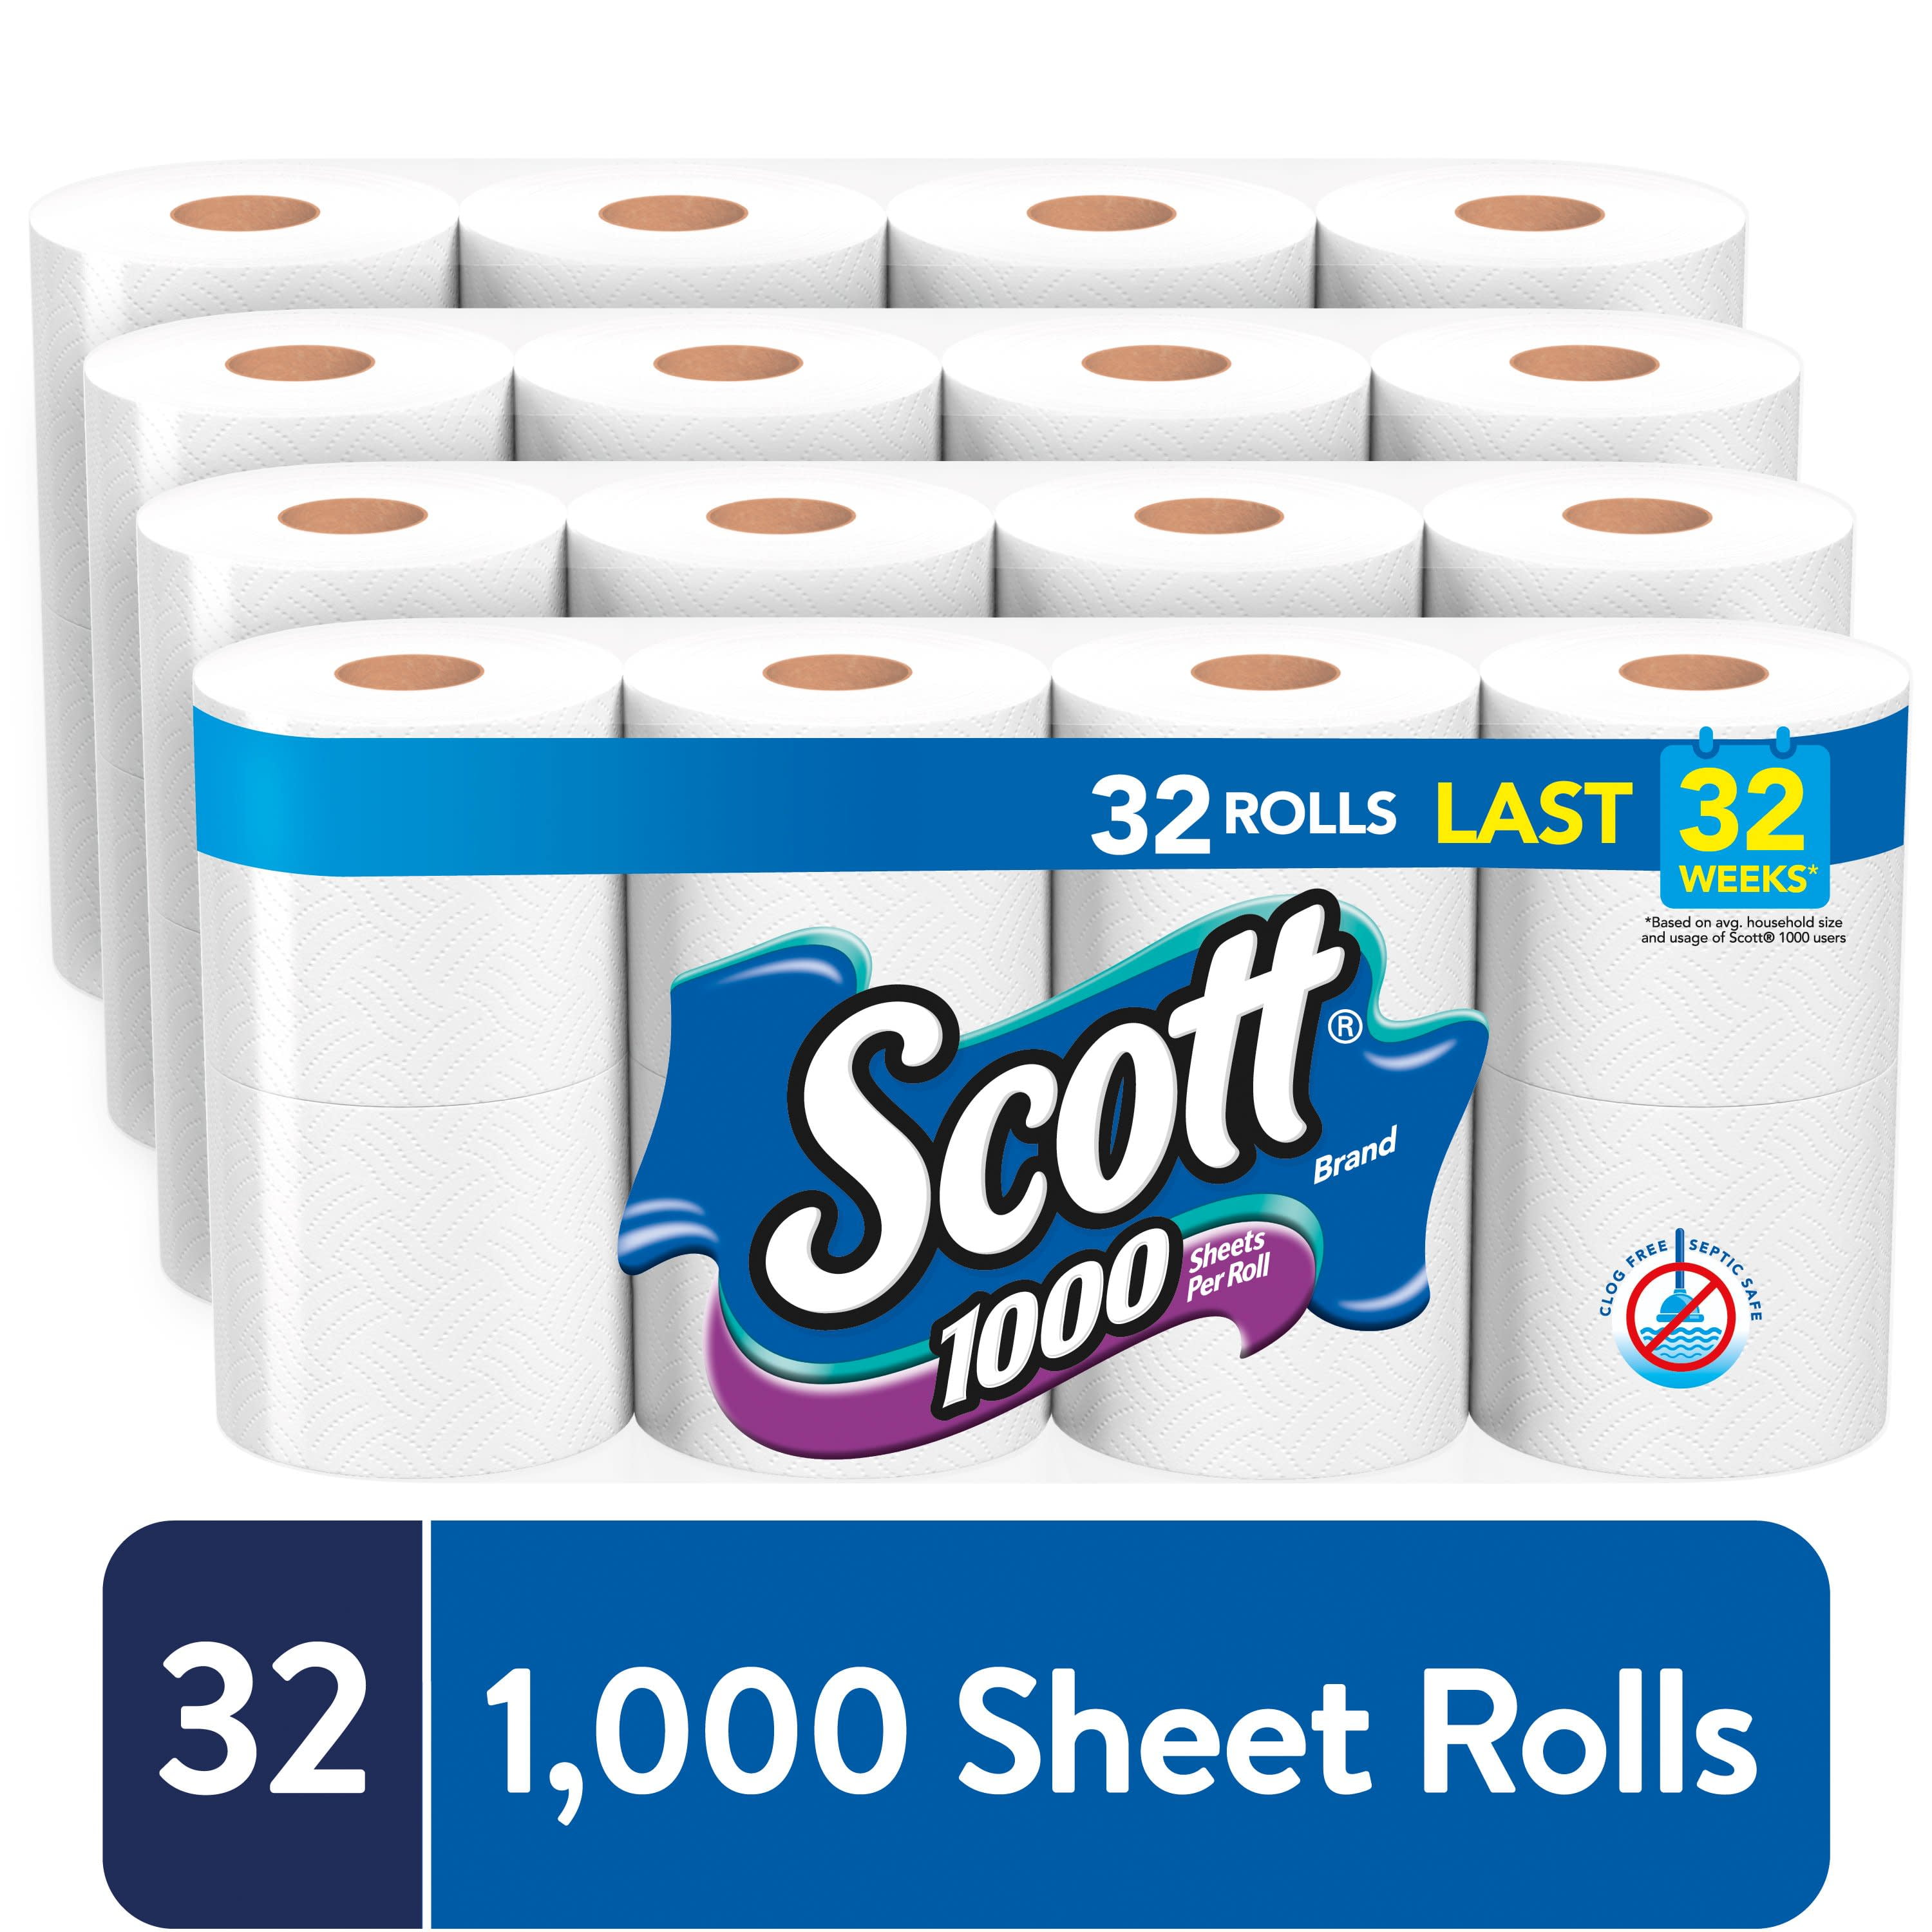 32 4 Packs of 8 Bath Tissue Family Pack Scott Toilet Paper 